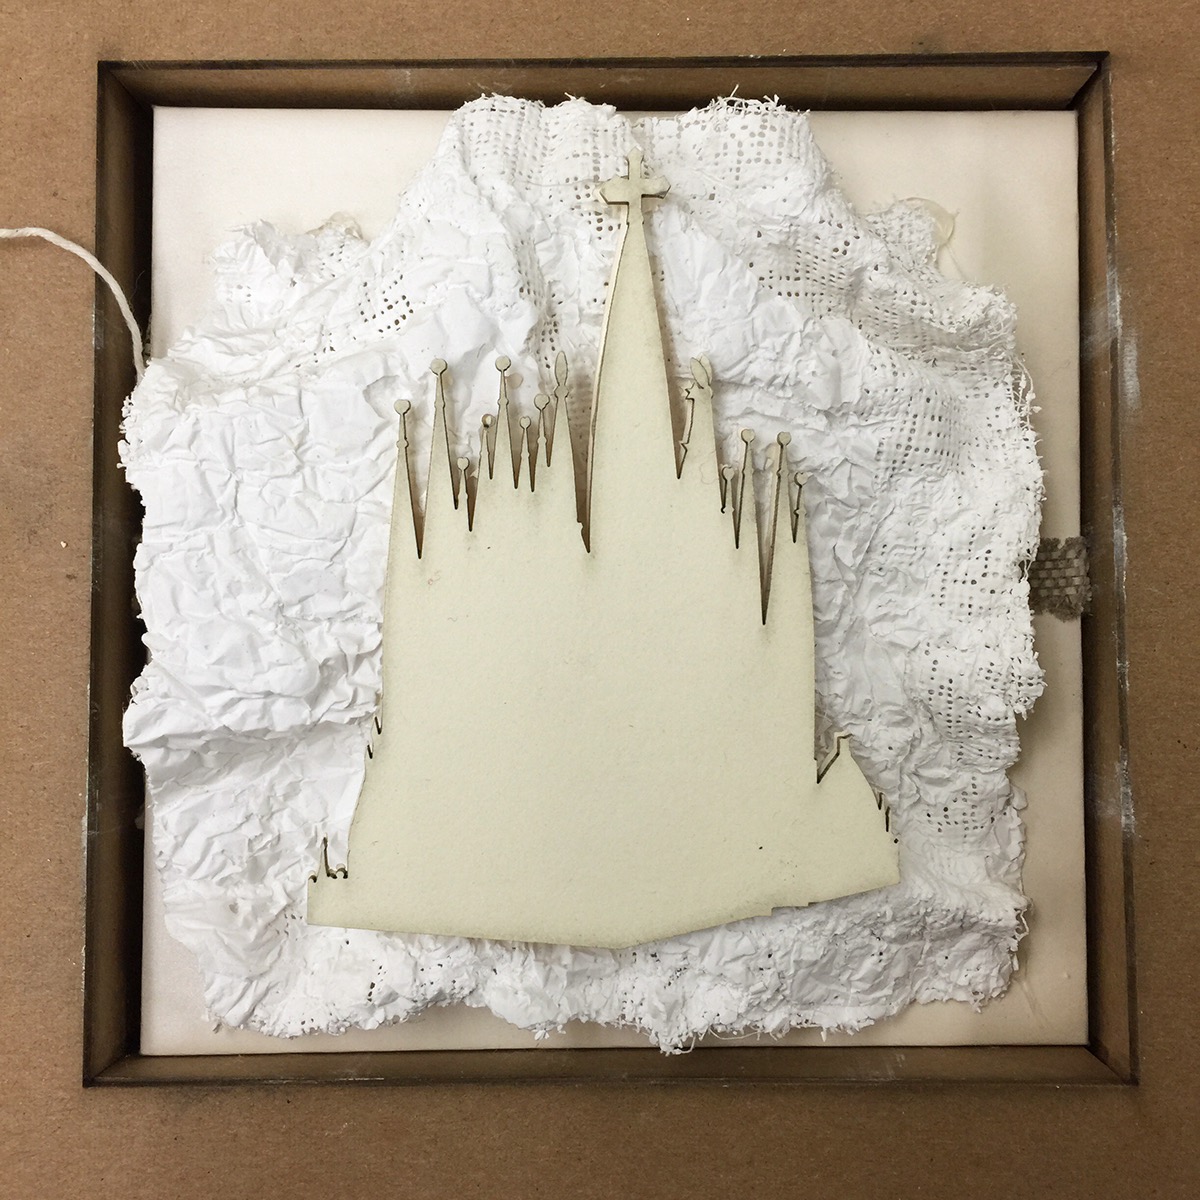 Bookbinding Gaudi printmaking book design sculptural book 3D handmaking